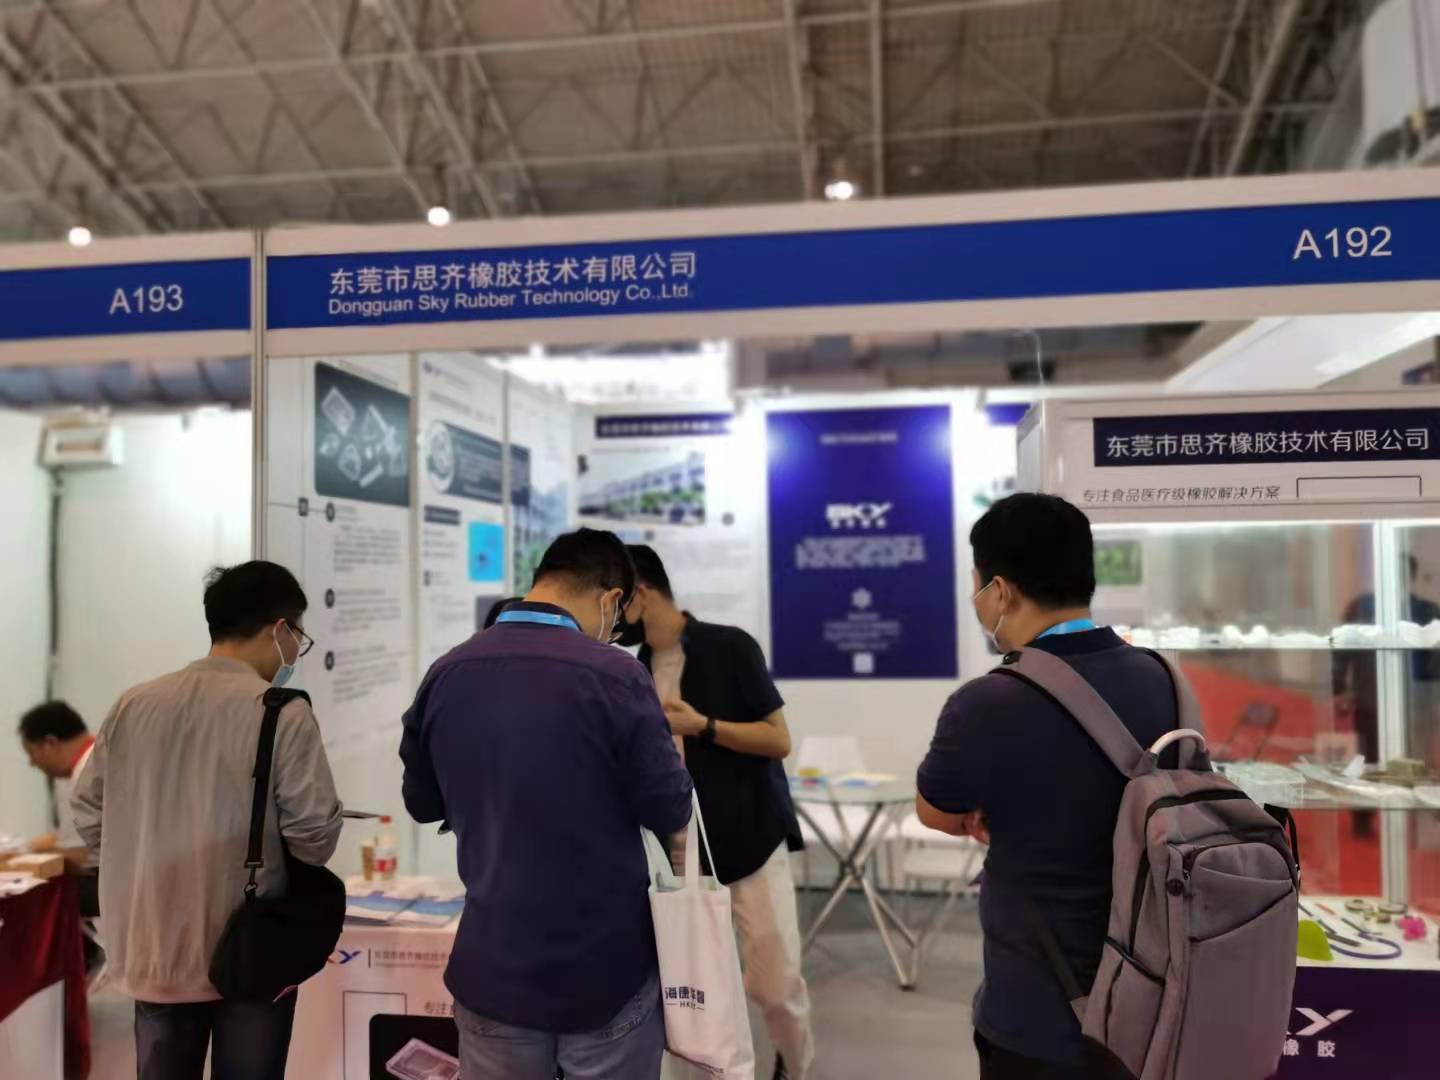 东莞市思齐橡胶技术有限公司参加北京国际医疗器械展览会